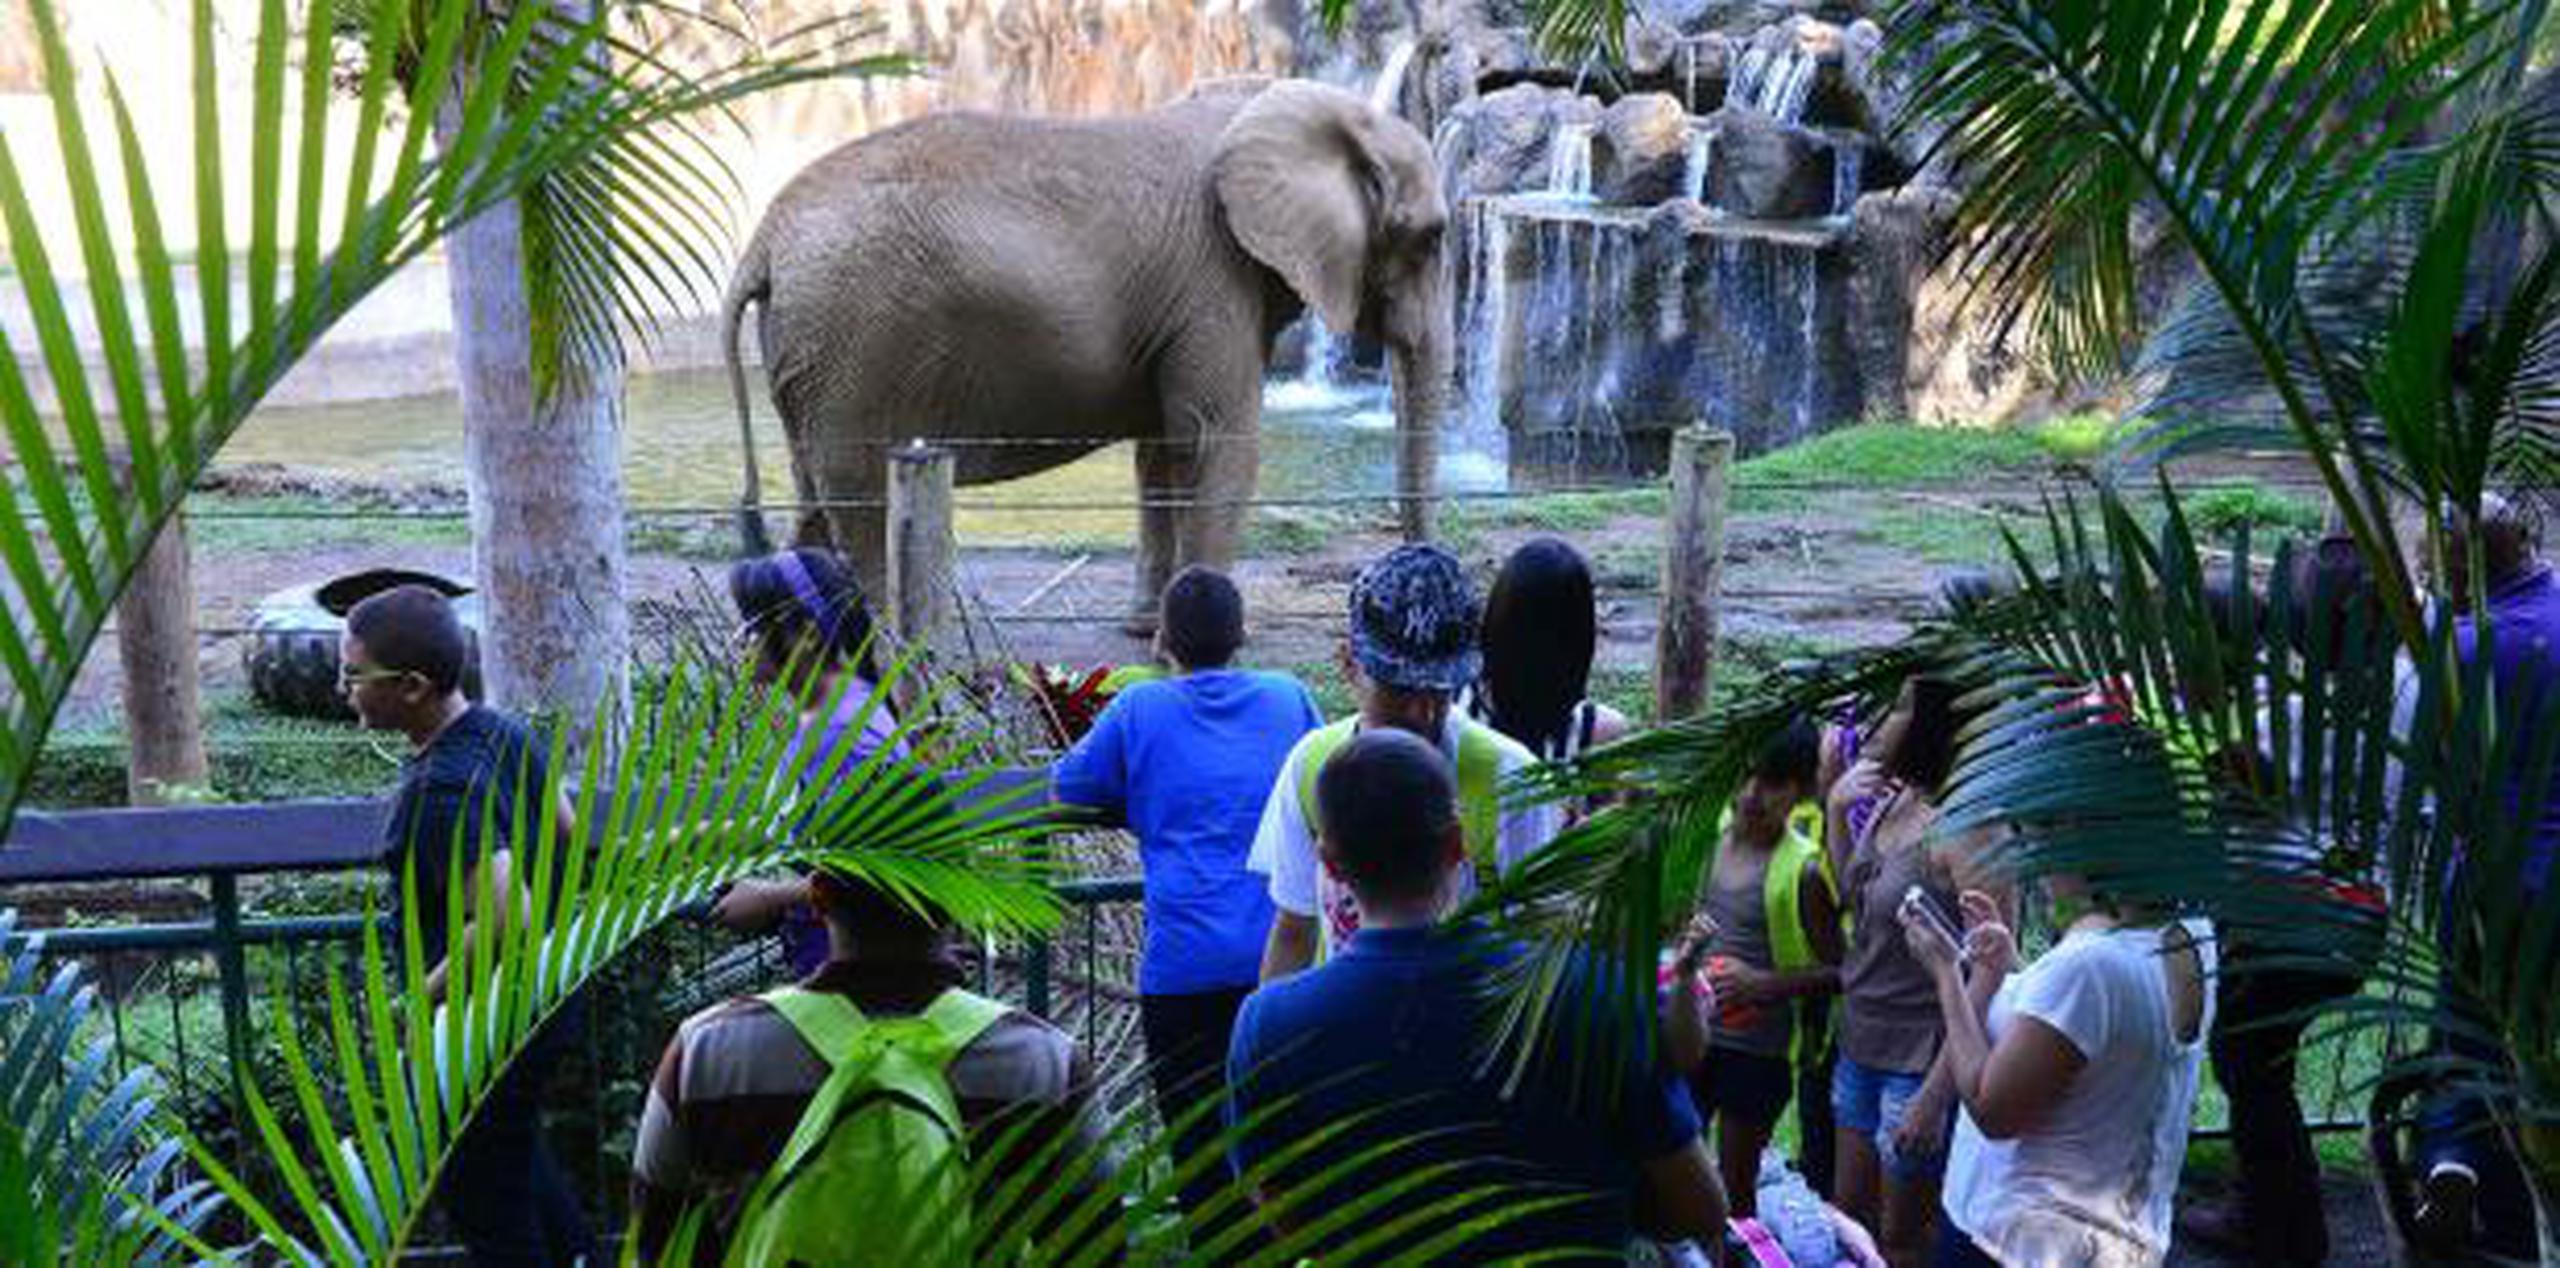 La elefanta Mundi ha sido eje de controversia, entre los que promueven que sea llevada a un santuario en Georgia, y los que luchan para que permanezca en el zoológico. (Archivo)